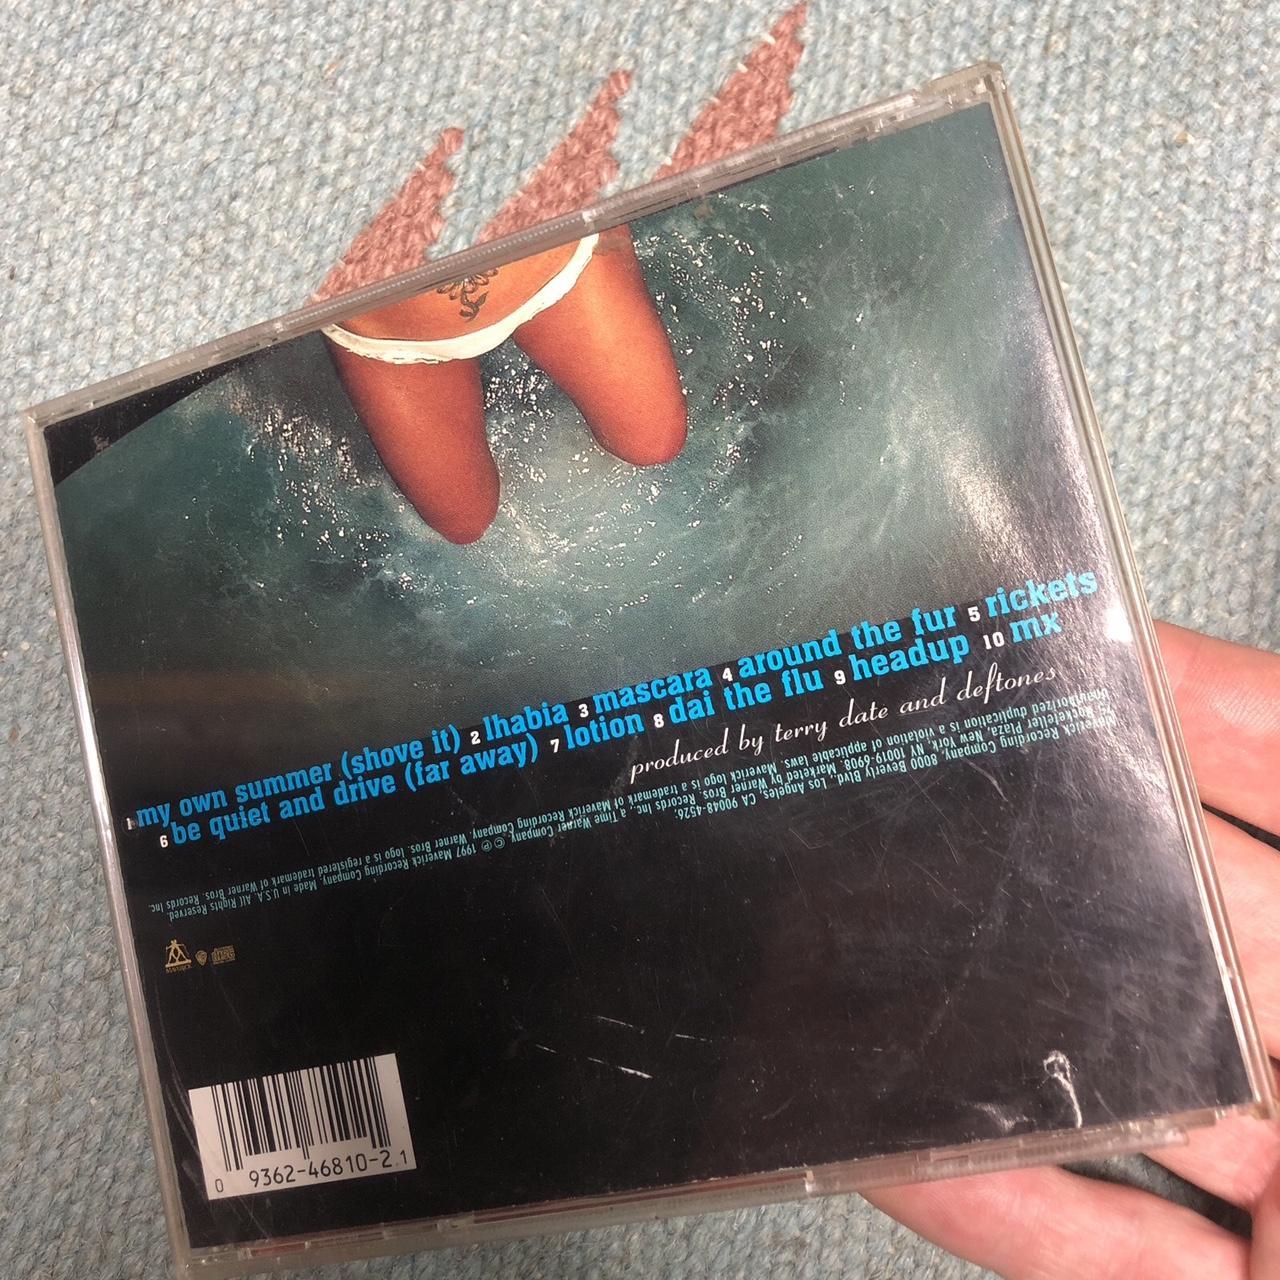 CD Femme multi Cds-and-vinyl (5)